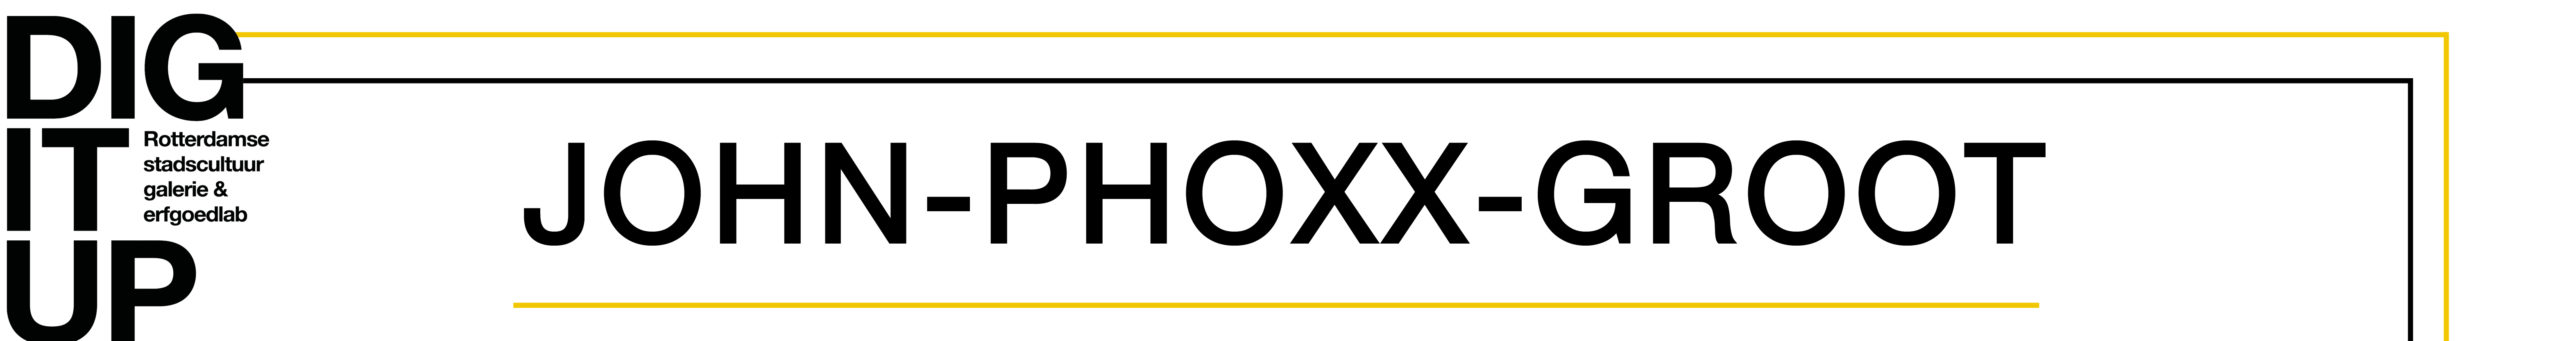 John PHOXX – groot Logo